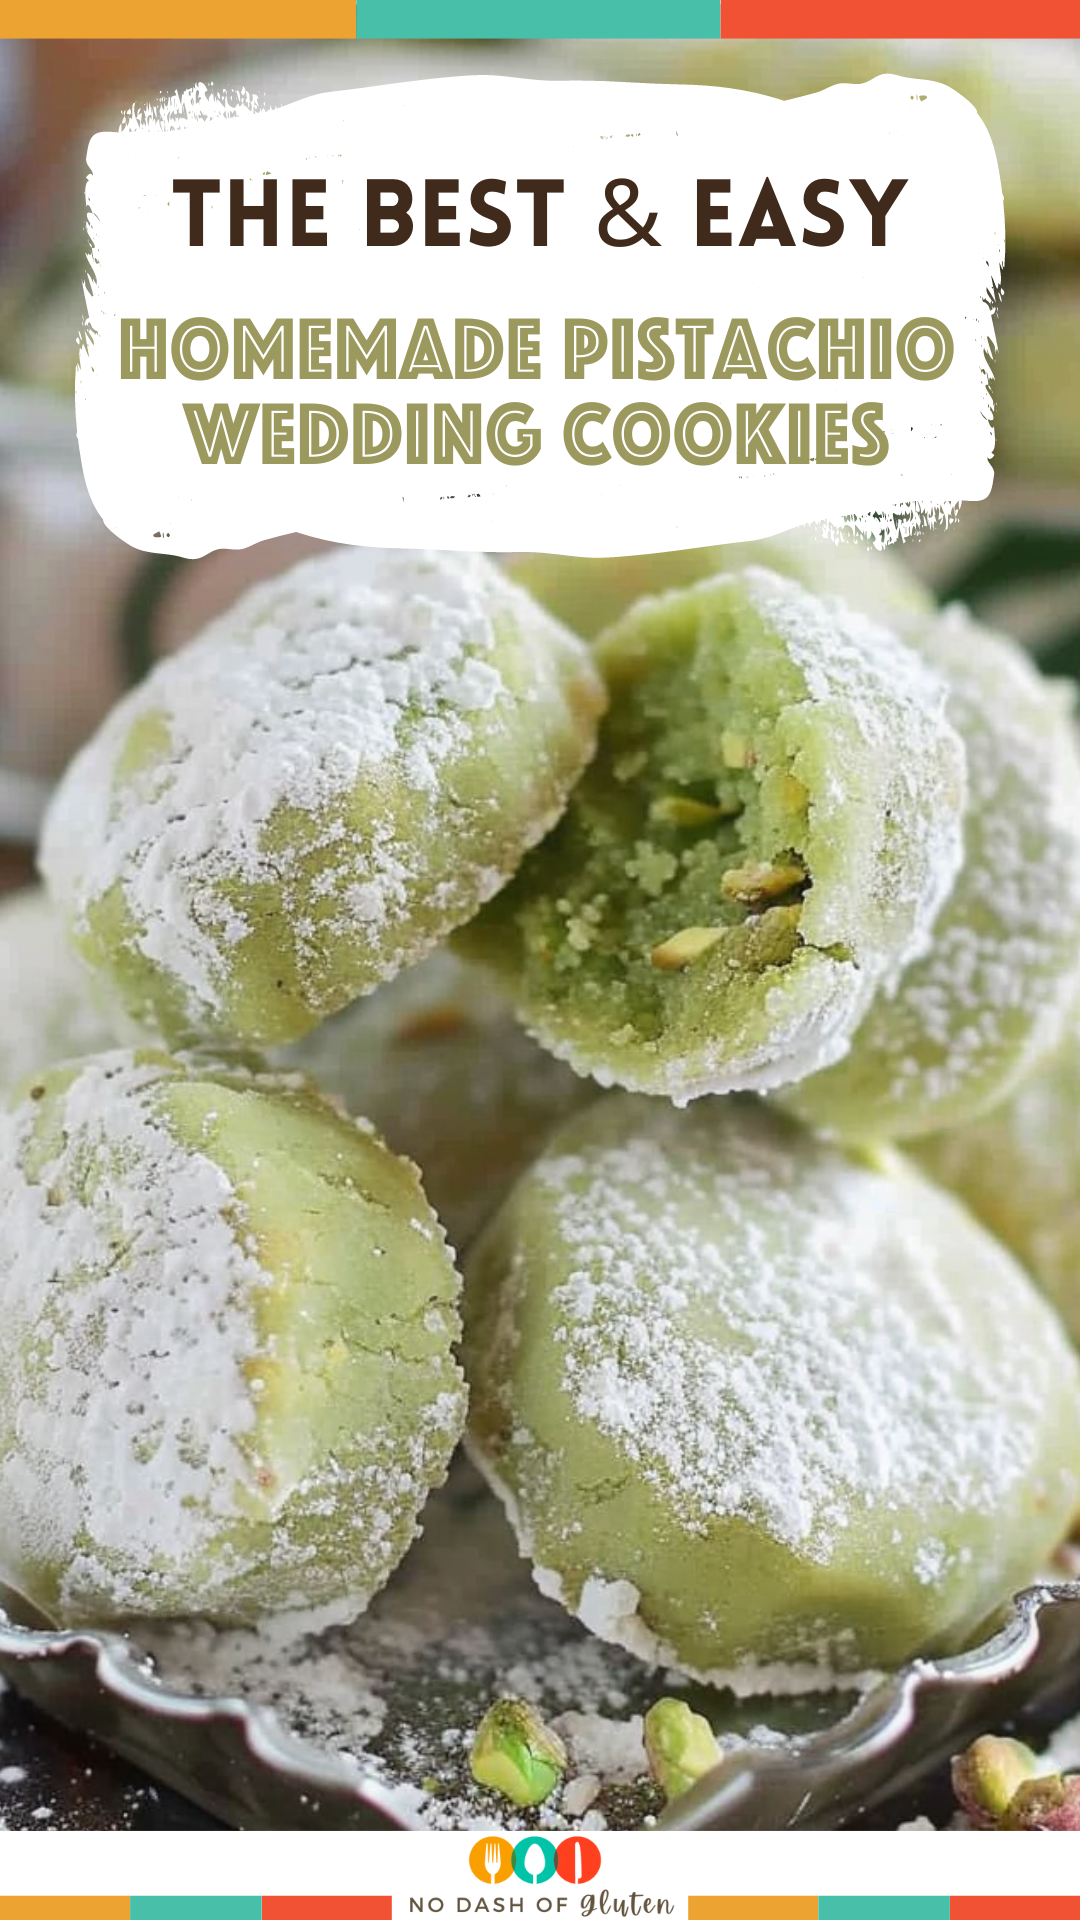 Homemade Pistachio Wedding Cookies